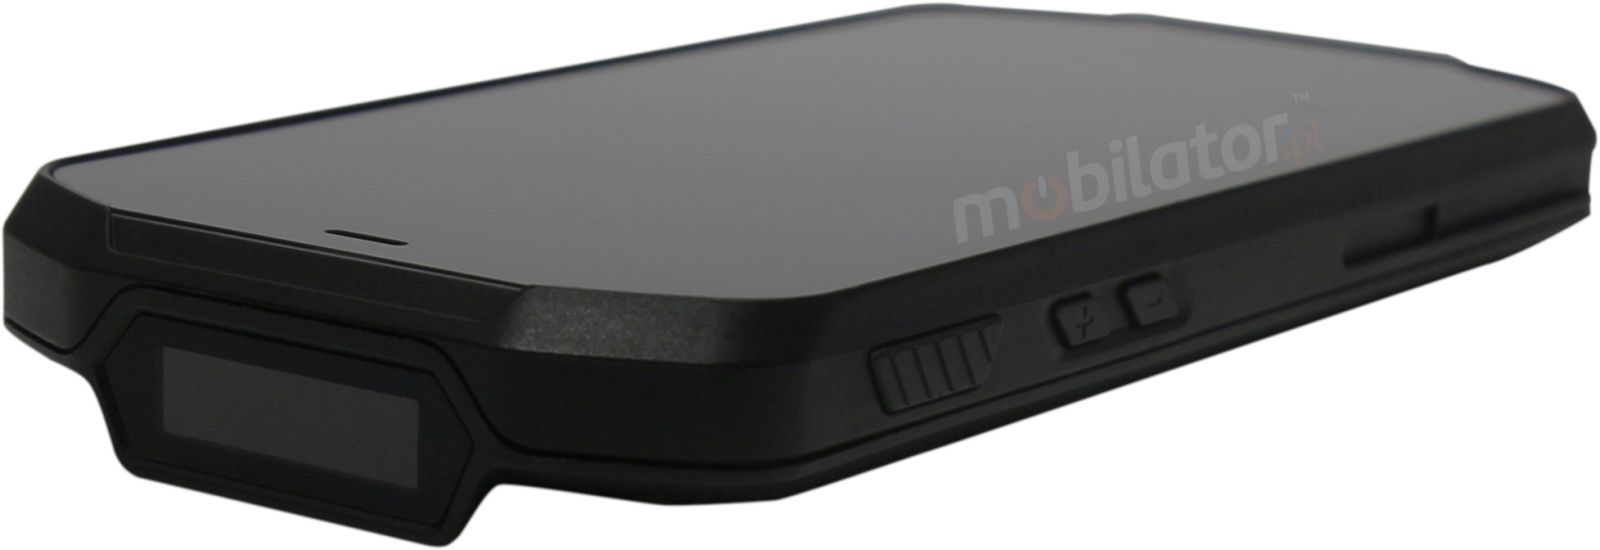 Mobipad Qxtron Q5100 v.5 - Wstrzsoodporny (IP65 + MIL-STD-810G) terminal danych z systemem Android 9.0 i czytnikiem kodw 2D oraz UHF, pamici 4GB RAM i pojemnoci dysku 64GB.